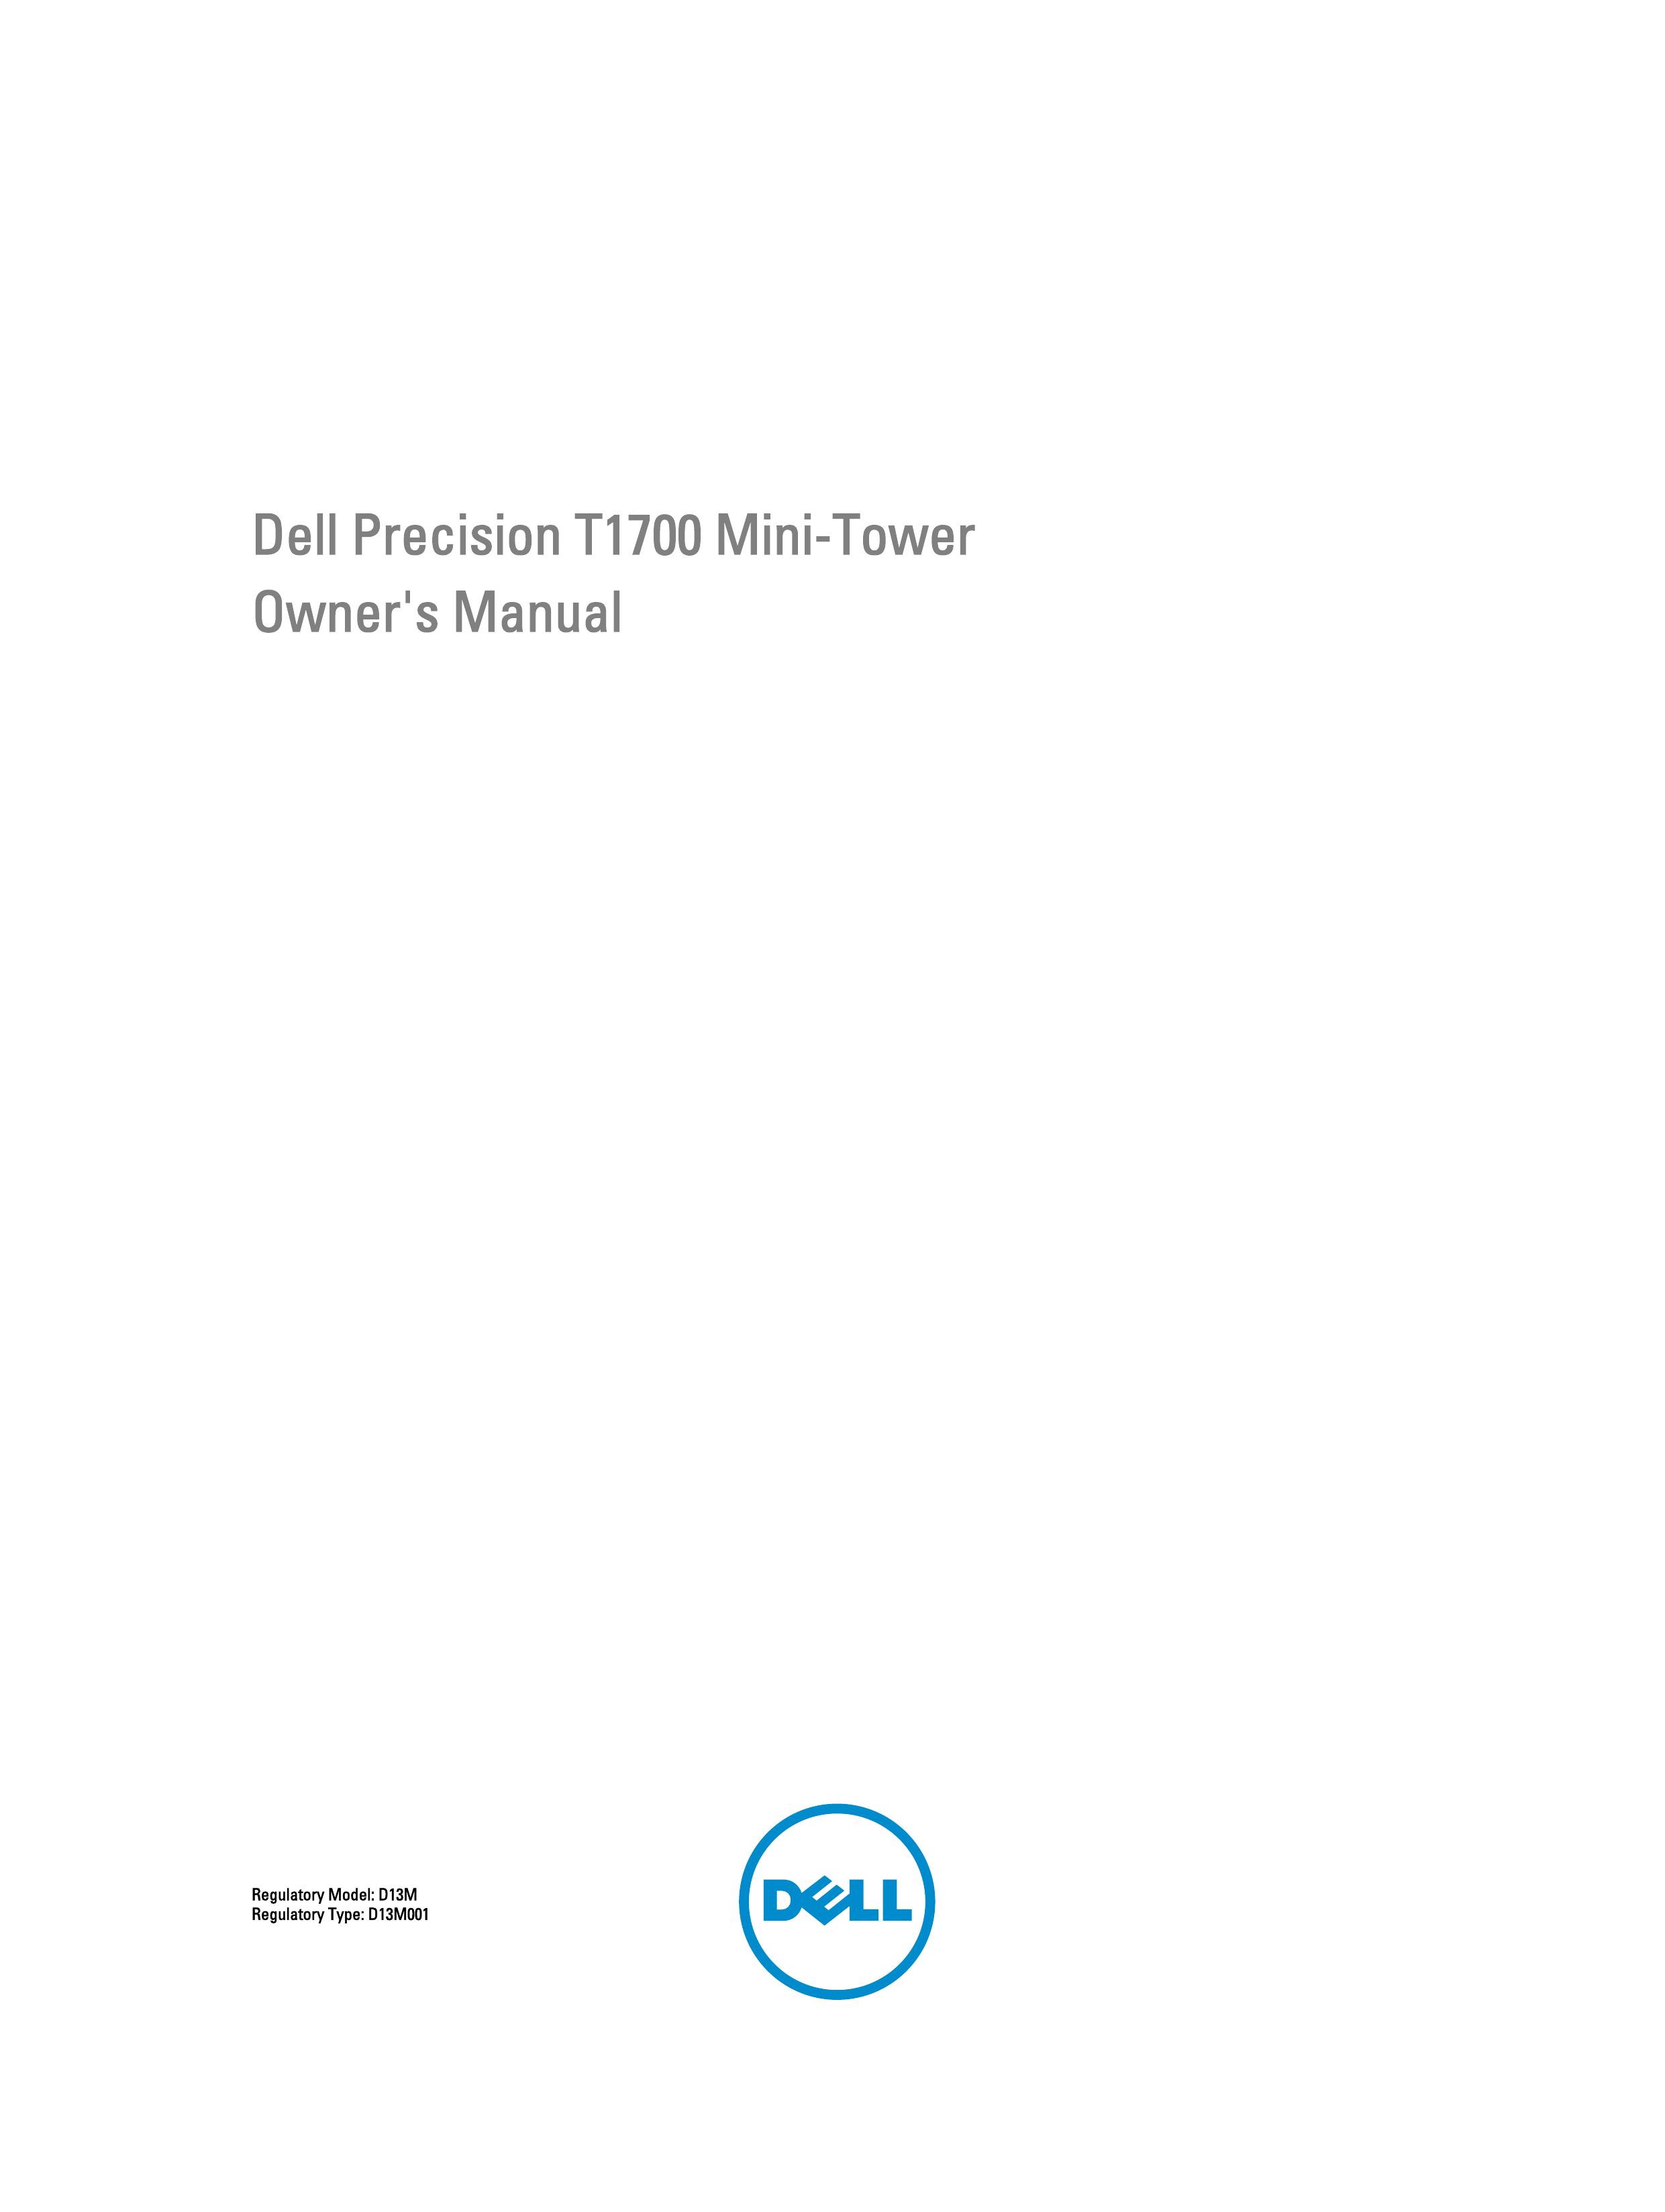 Dell T1700 Refrigerator User Manual